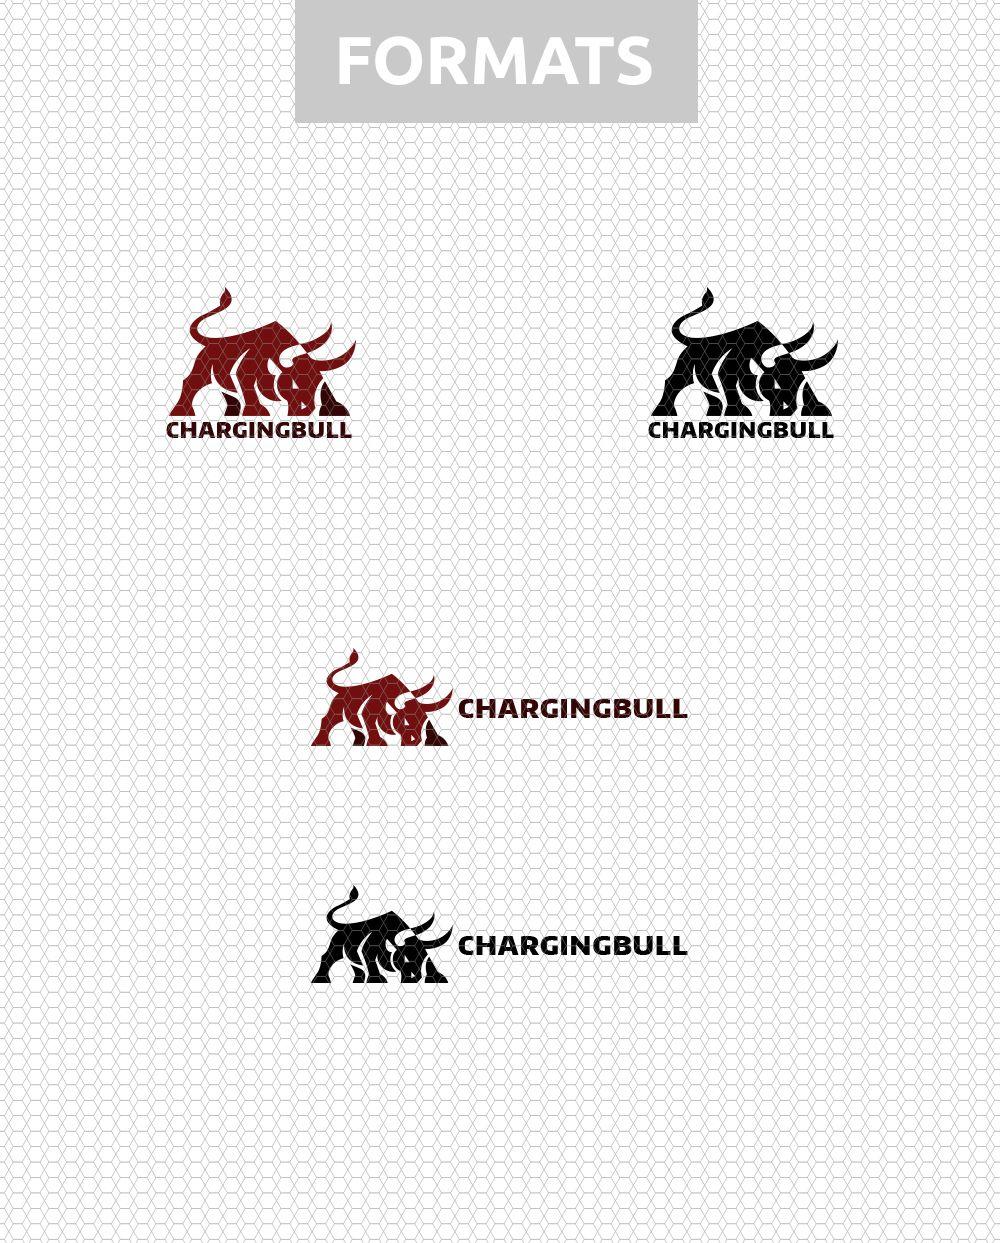 Charging Bull Logo - Charging Bull – Kreatank